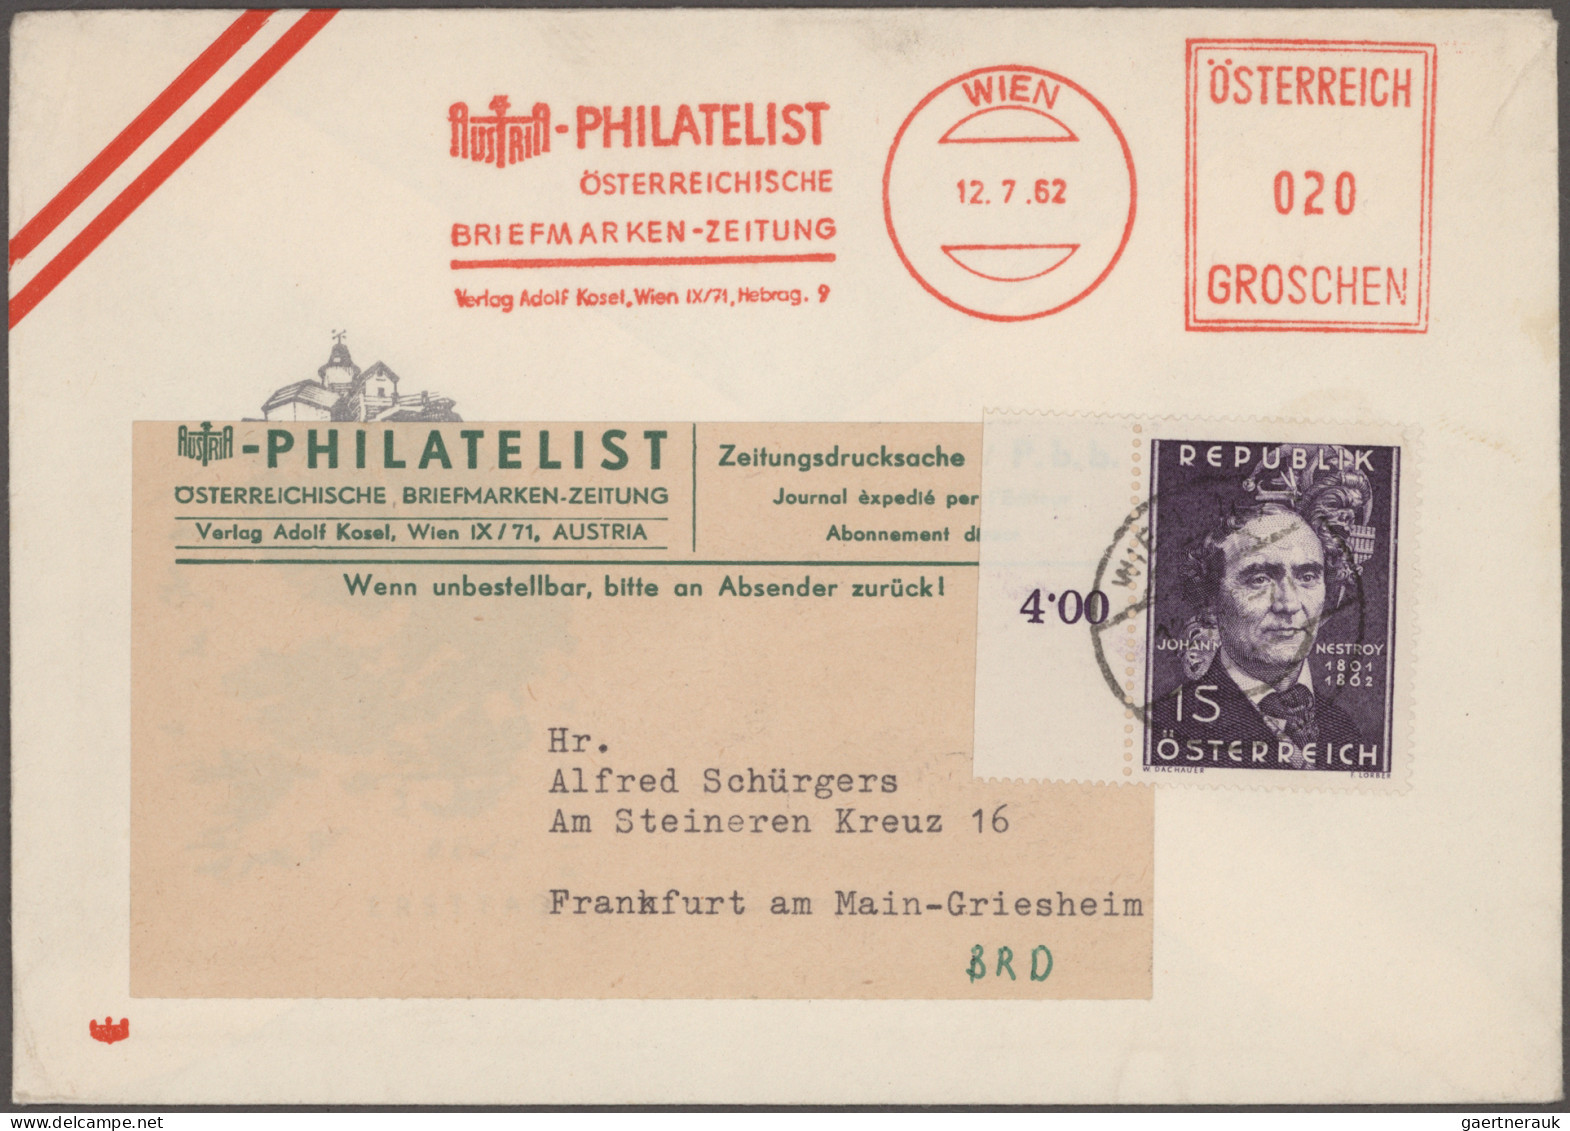 Österreich: 1875/1990 (ca.), umfangreicher Posten von ca. 580 Briefen und Karten